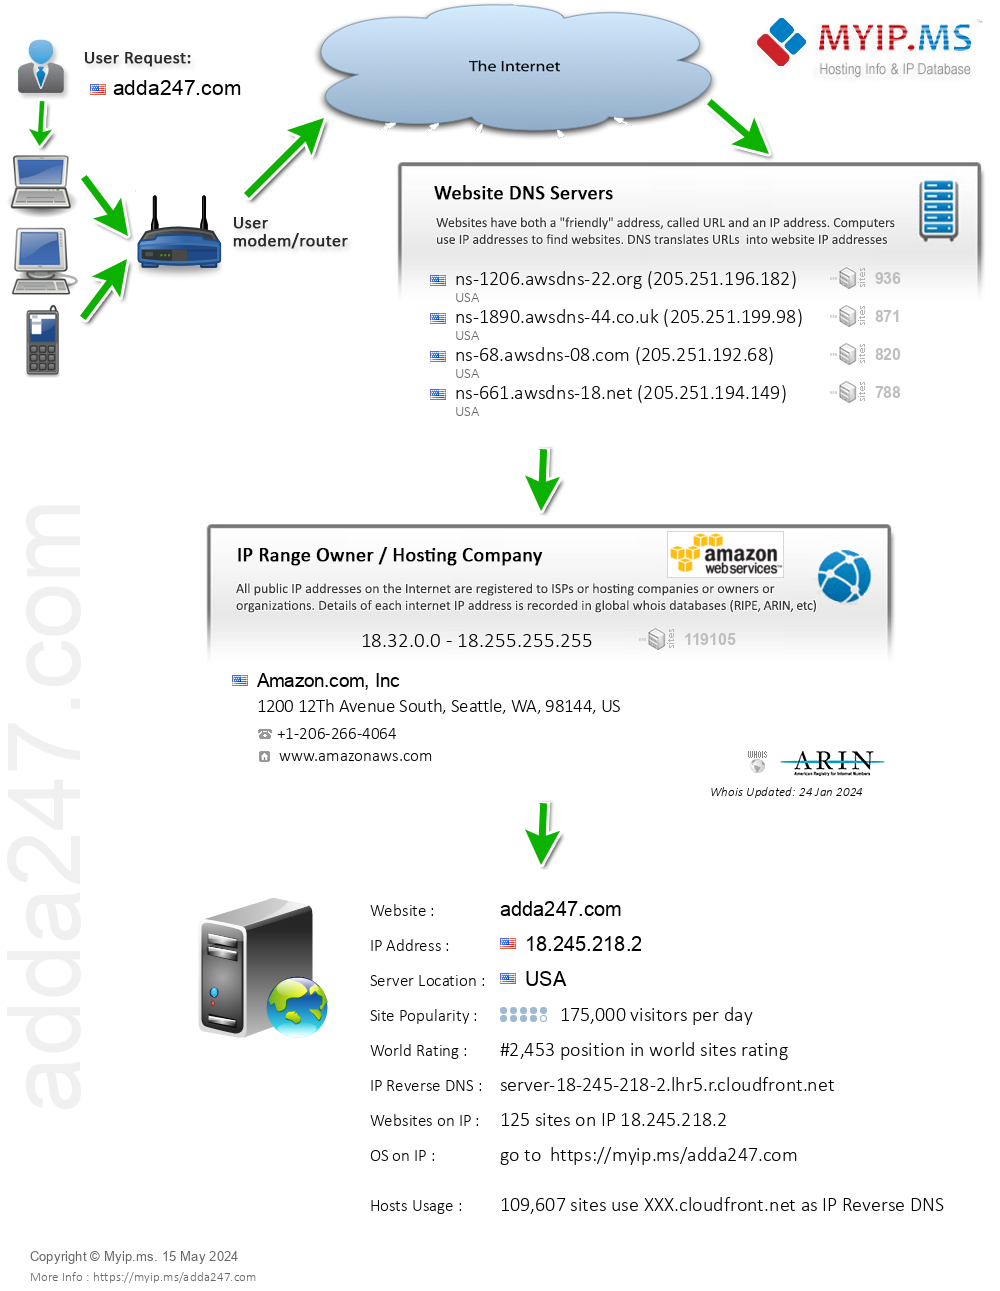 Adda247.com - Website Hosting Visual IP Diagram